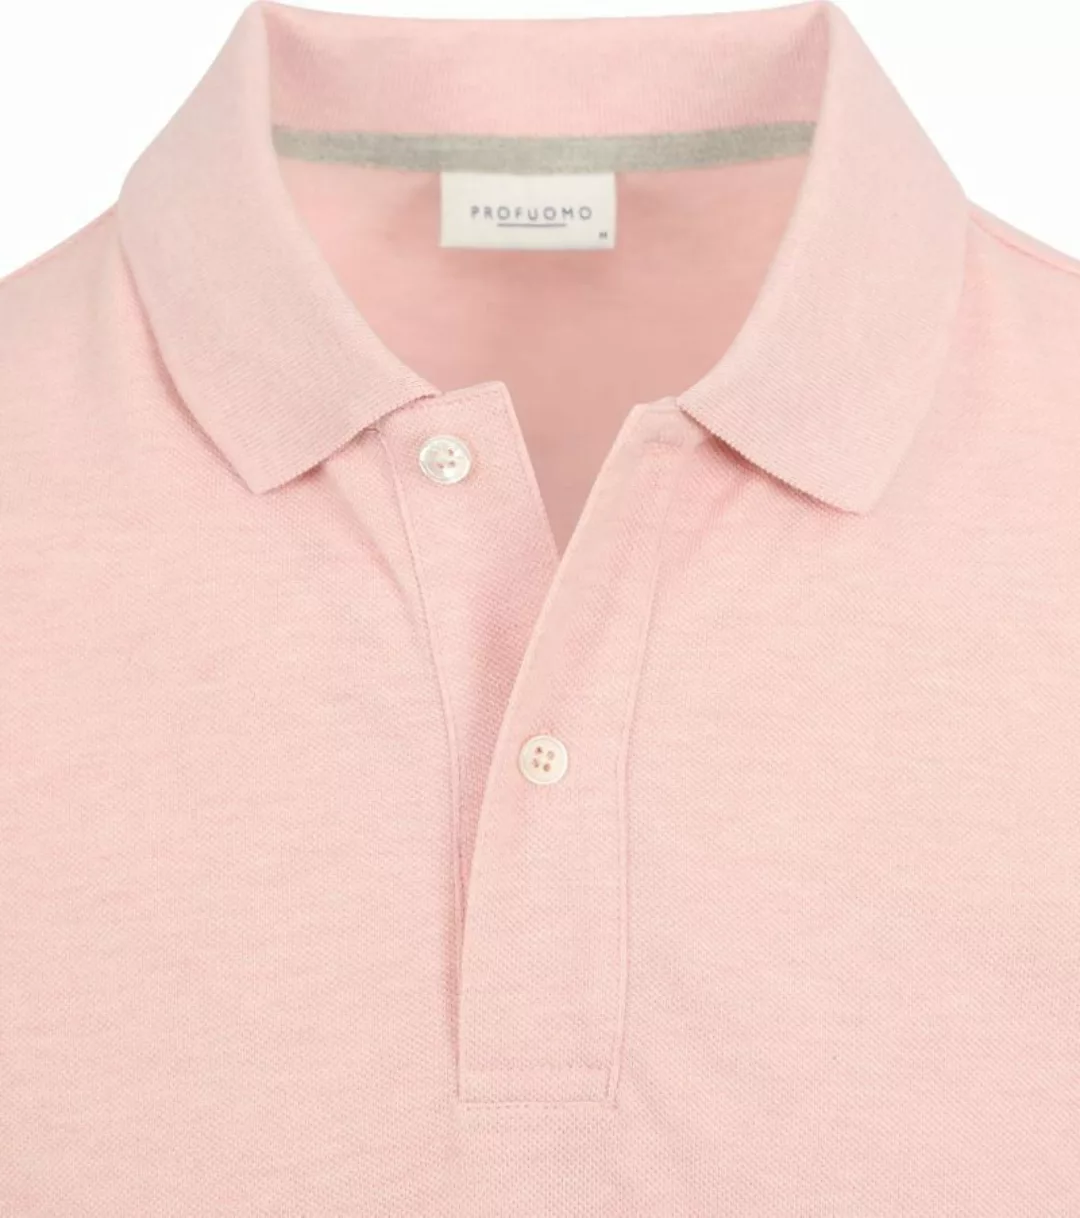 Profuomo Piqué Poloshirt Rosa - Größe XL günstig online kaufen